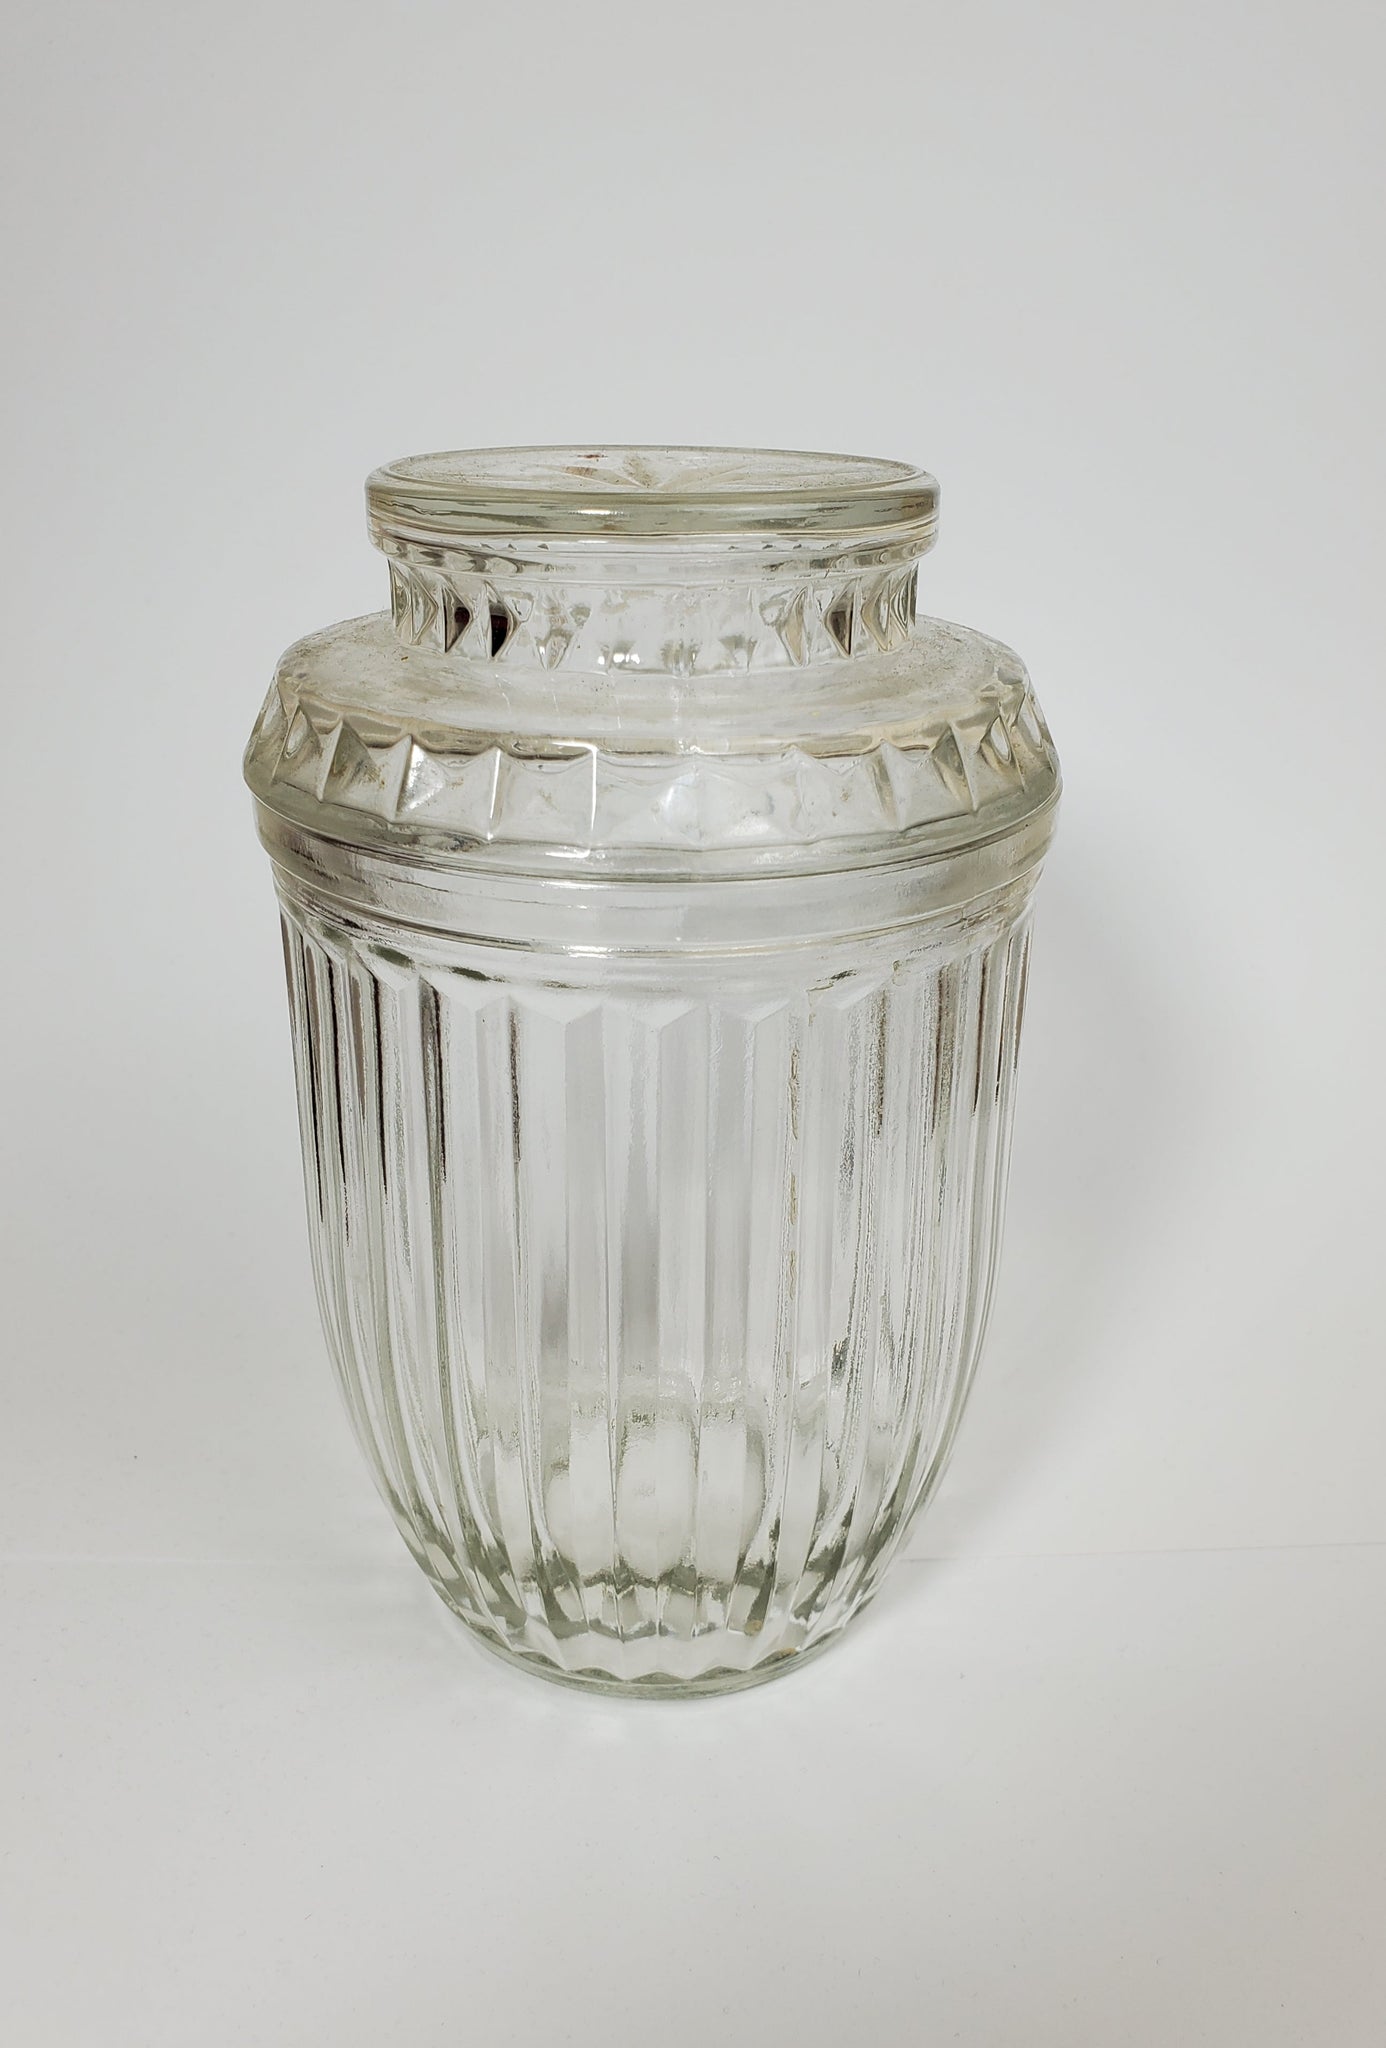 Anchor Hocking - Vintage Glass Lidded Jar